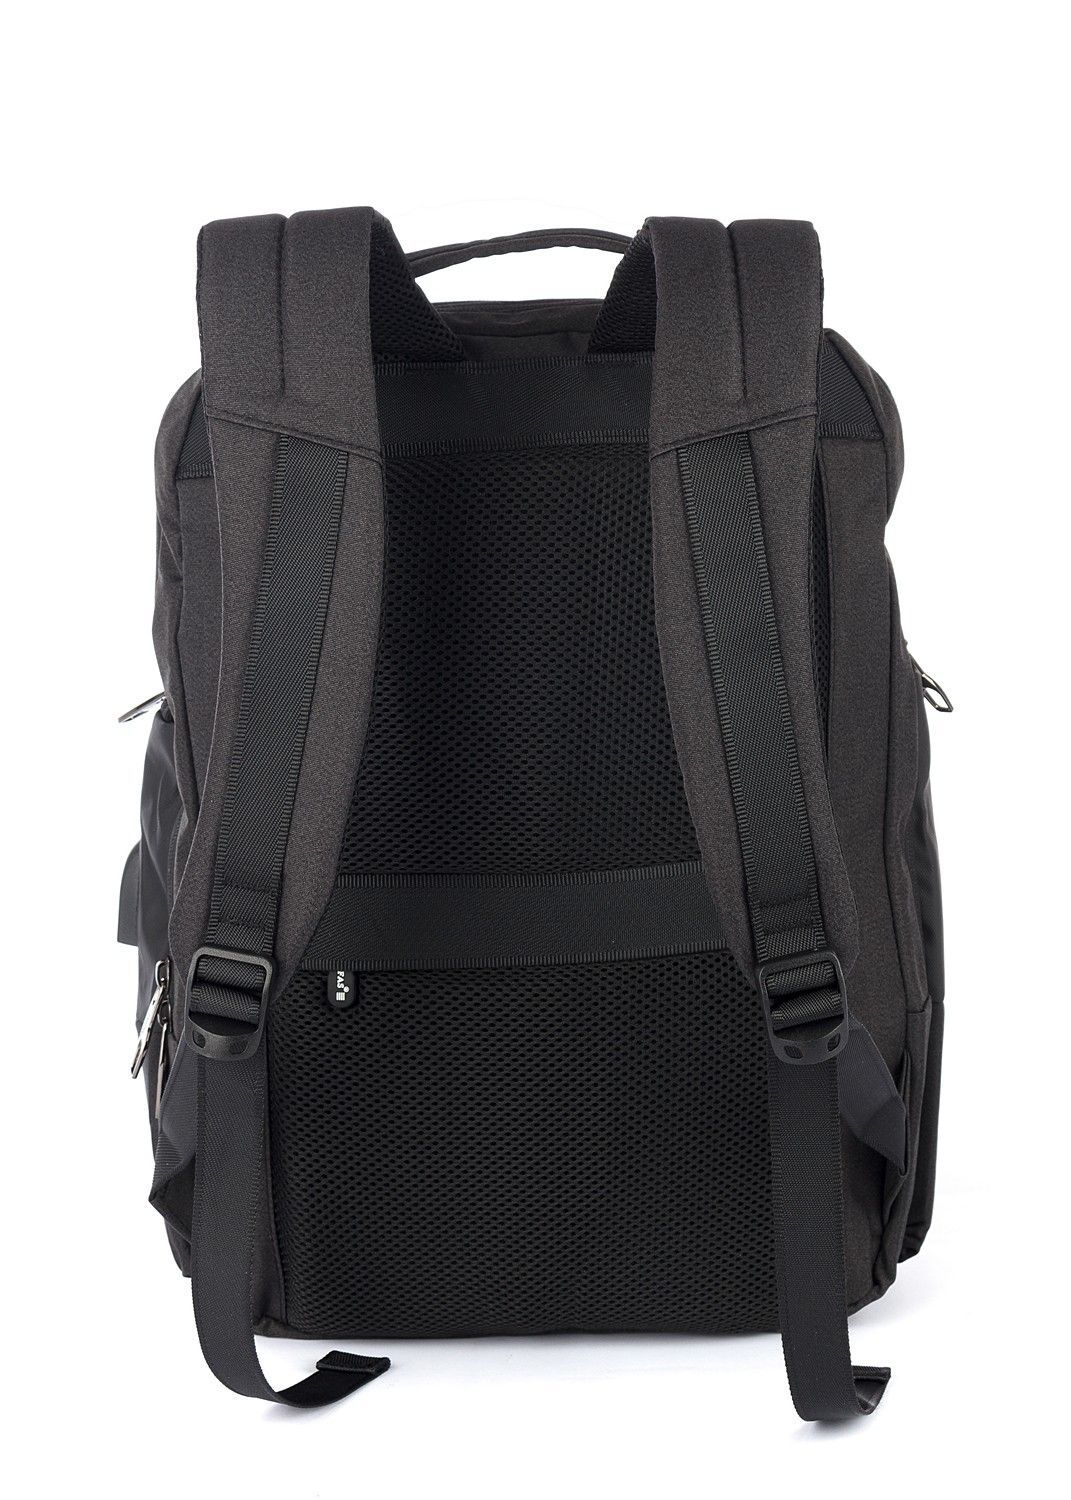 Рюкзак мужской городской, черный, для ноутбука, с USB портом, объем 18л